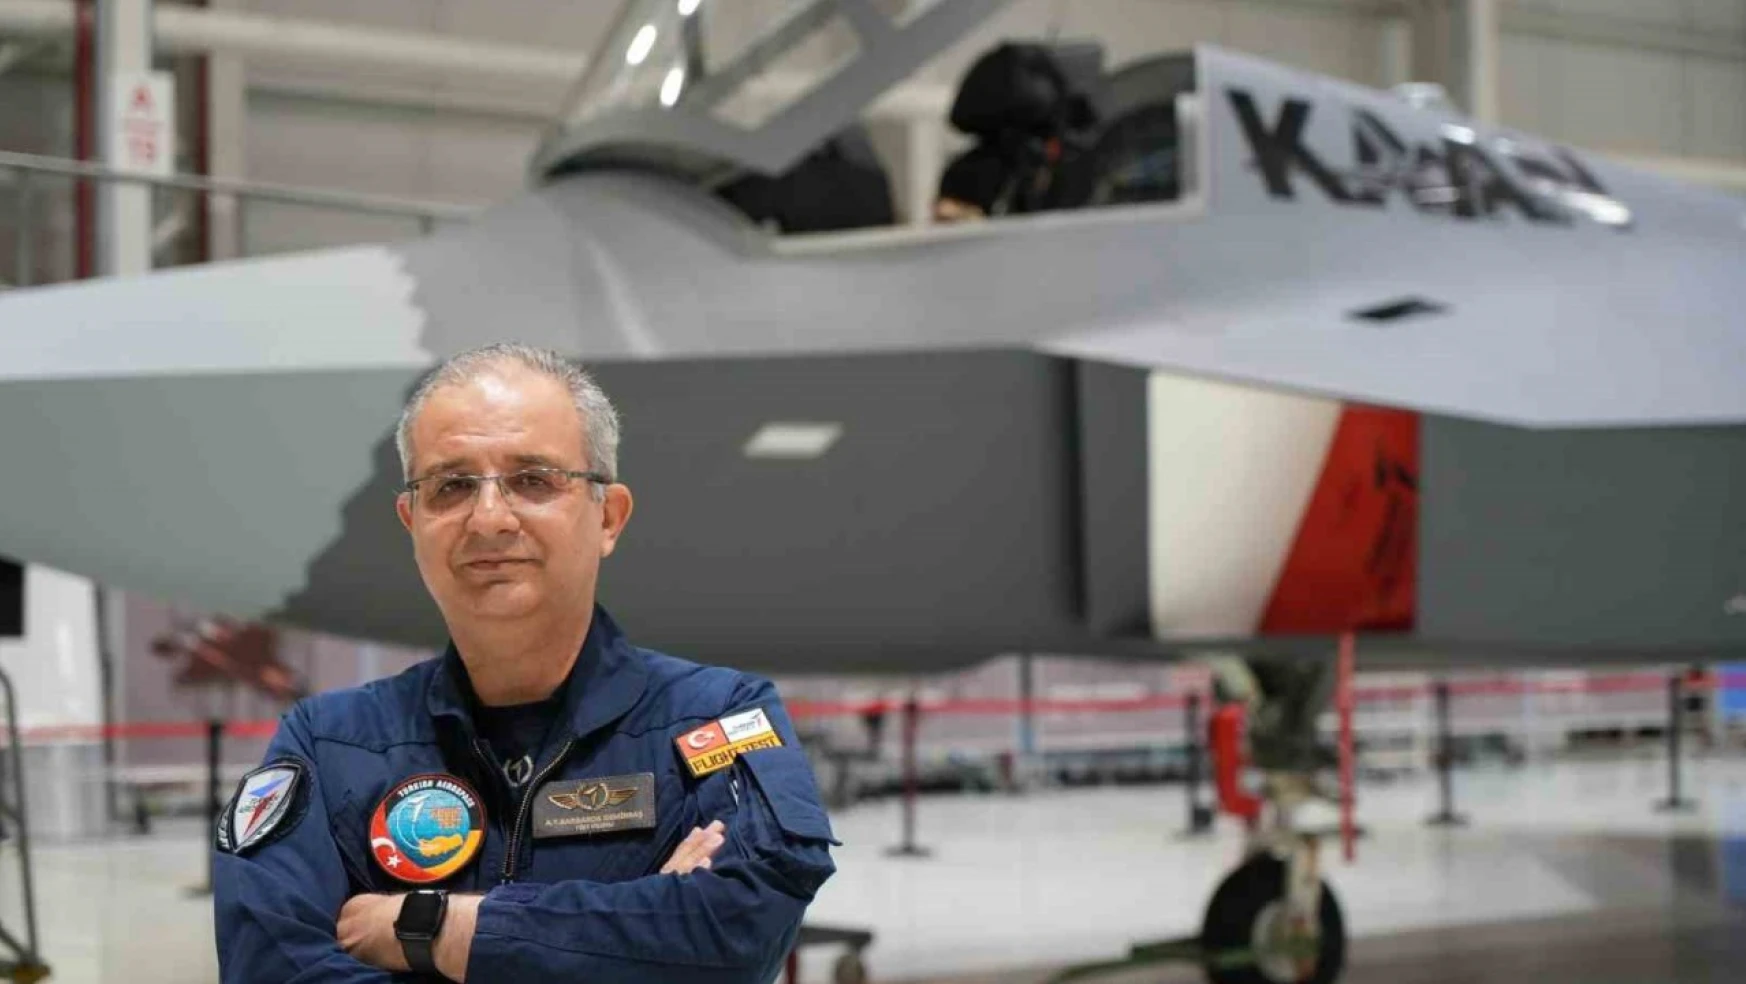 Türkiye'nin Milli Muharip Uçağı KAAN'ın Test Pilotu Demirbaş, Dünya Pilotlar Günü dolayısıyla konuştu